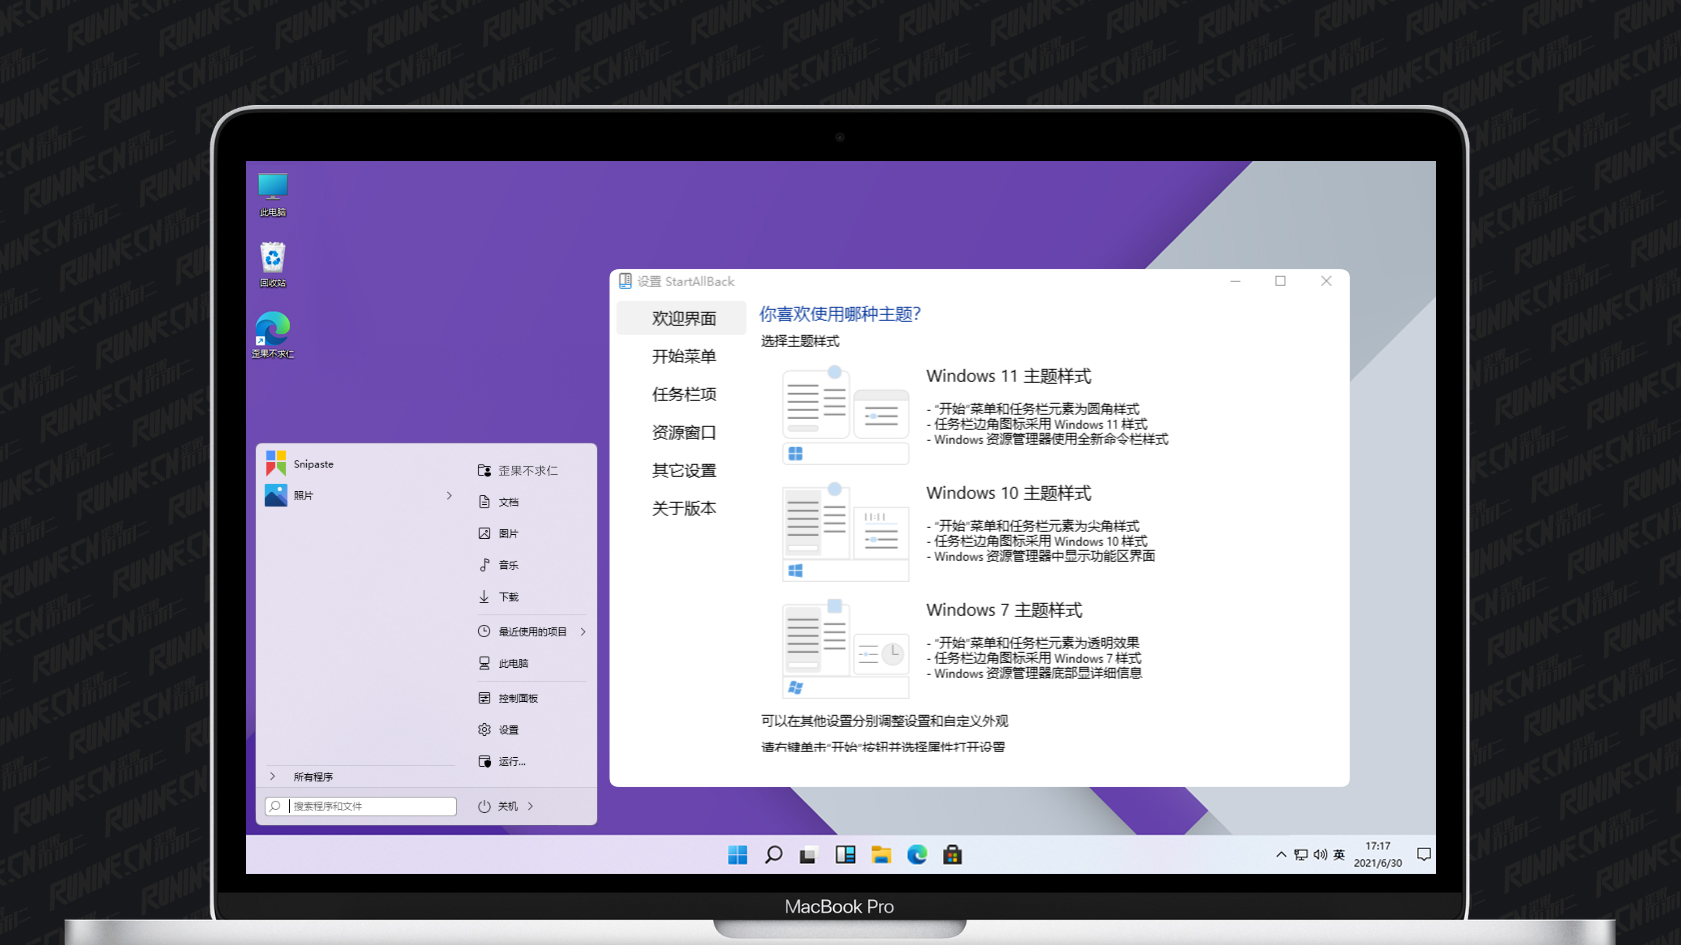 StartAllBack 3.6.7 for mac instal